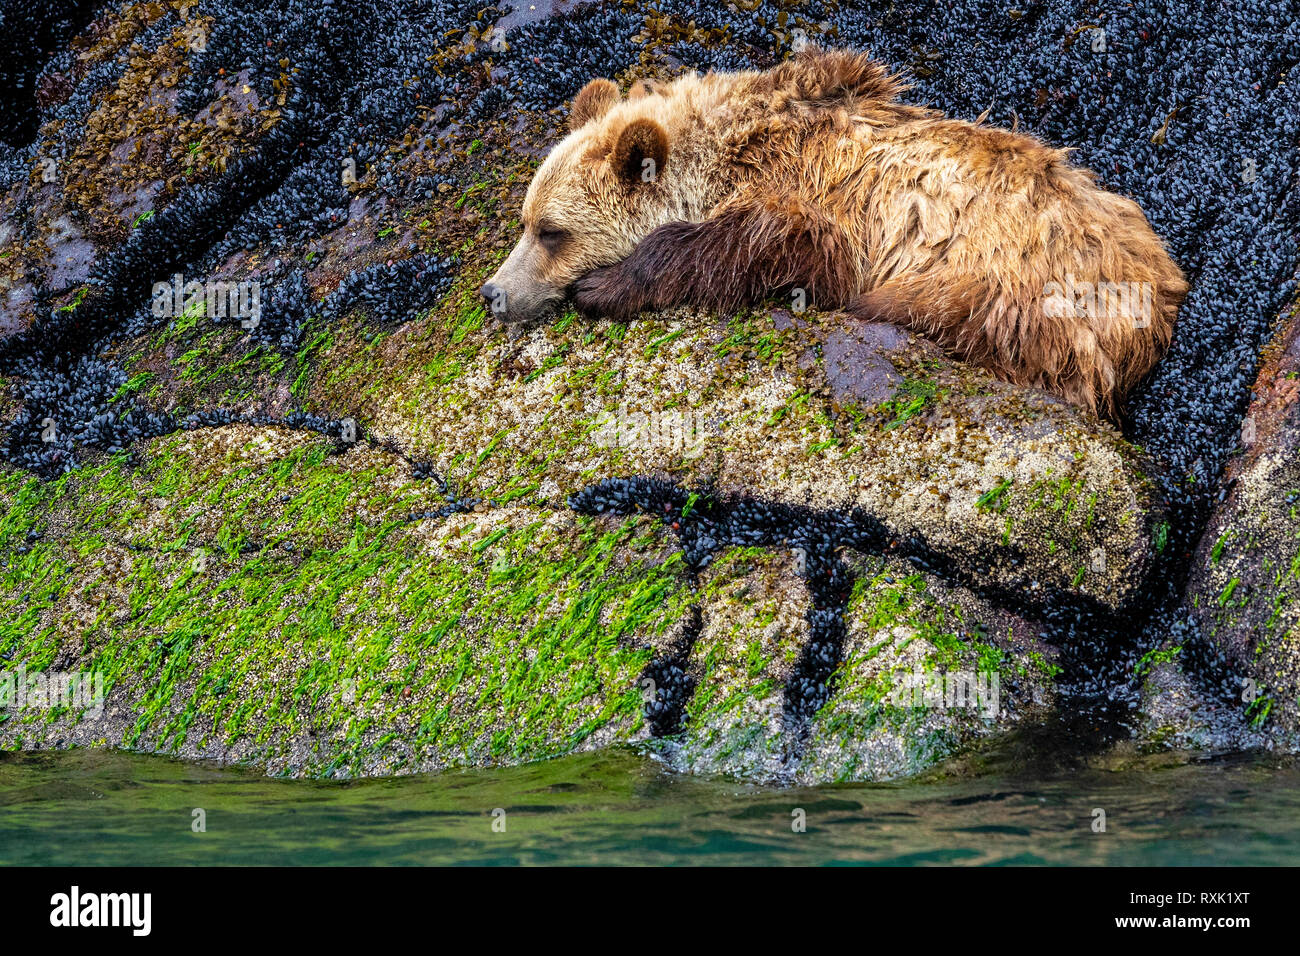 Junge grizzly Bär in Muscheln entlang der Knight Inlet Shoreline bei Ebbe schlafen, First Nations Territorium, British Columbia, Kanada. Stockfoto